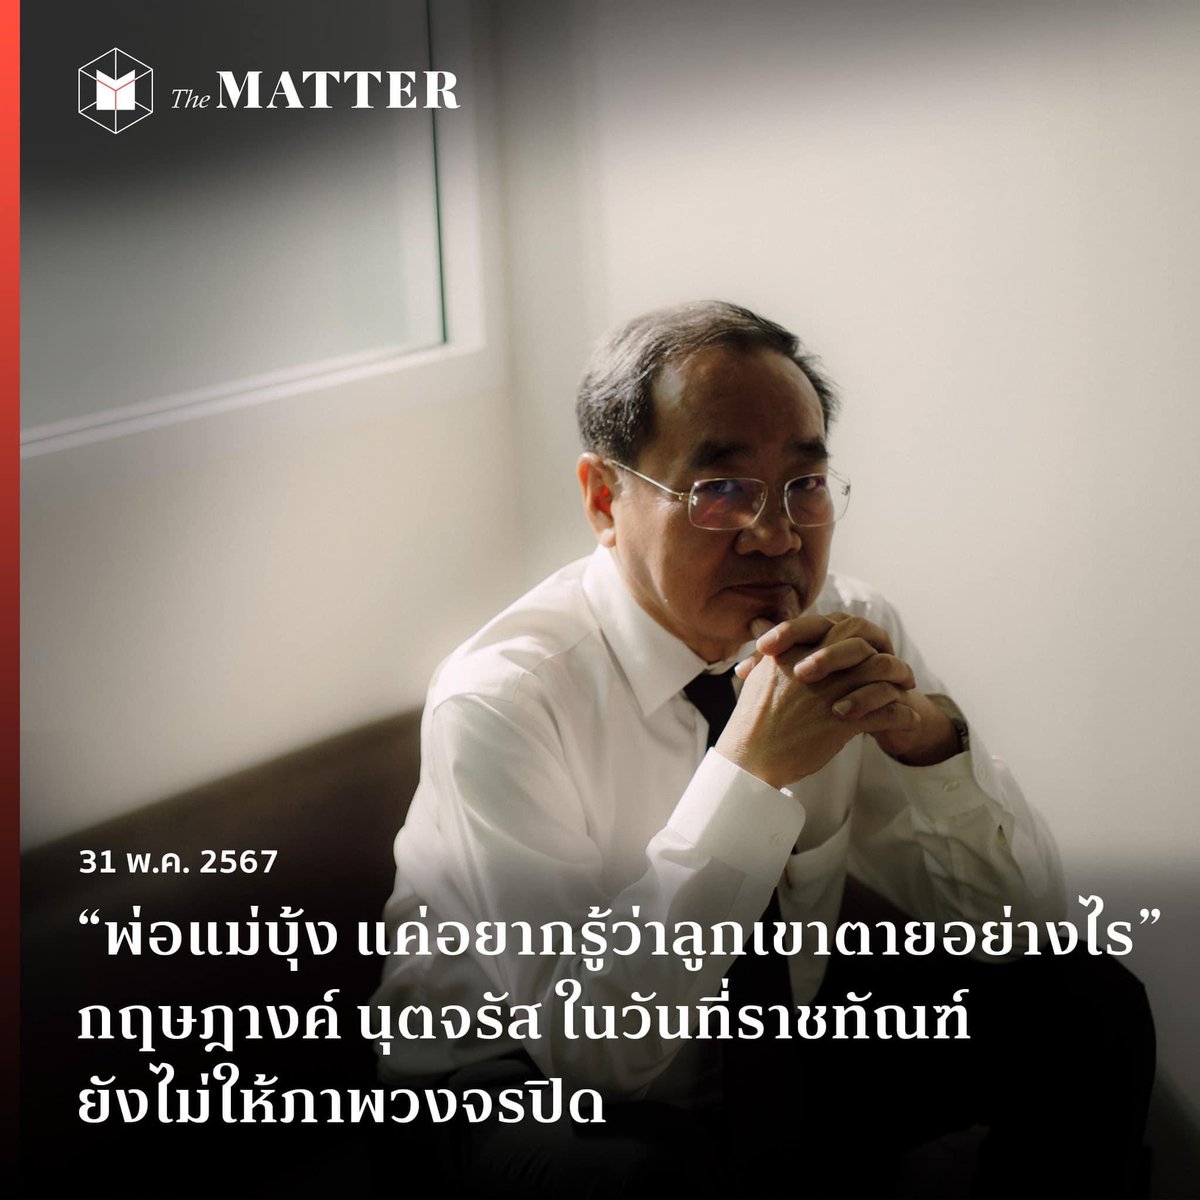 เมื่อสาเหตุการเสียชีวิตของ ‘บุ้ง เนติพร’ หรือ #บุ้งทะลุวัง นำไปสู่ข้อถกเถียงมากมายเกี่ยวกับระบบการรักษาพยาบาล และมาตรฐานการดูแลผู้ต้องขังของกรมราชทัณฑ์ไทย The MATTER ชวนคุยกับ ‘ทนายด่าง’ ถึงบทเรียนจากเหตุการณ์ที่เกิดขึ้น และระบบการรักษาพยาบาลในกรมราชทัณฑ์ไทยกัน